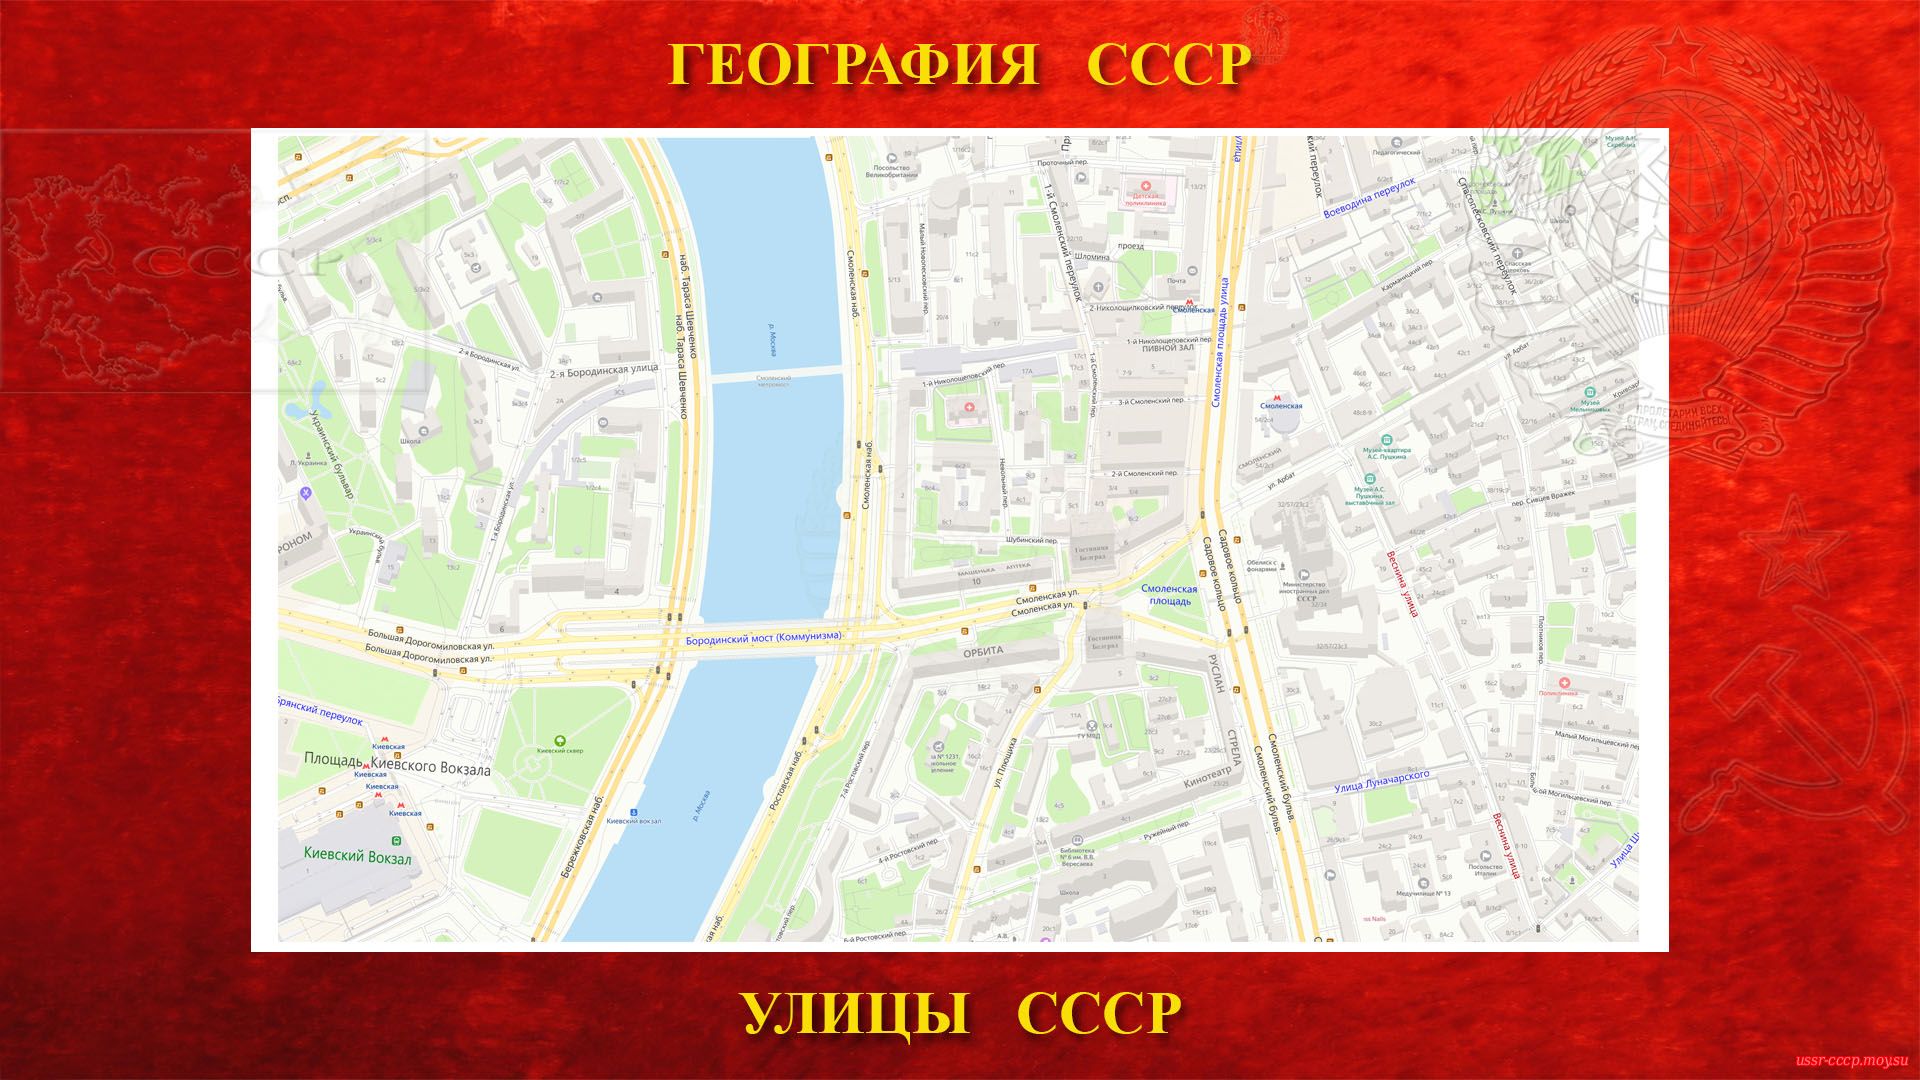 Веснина улица — Москва (1933—1991)